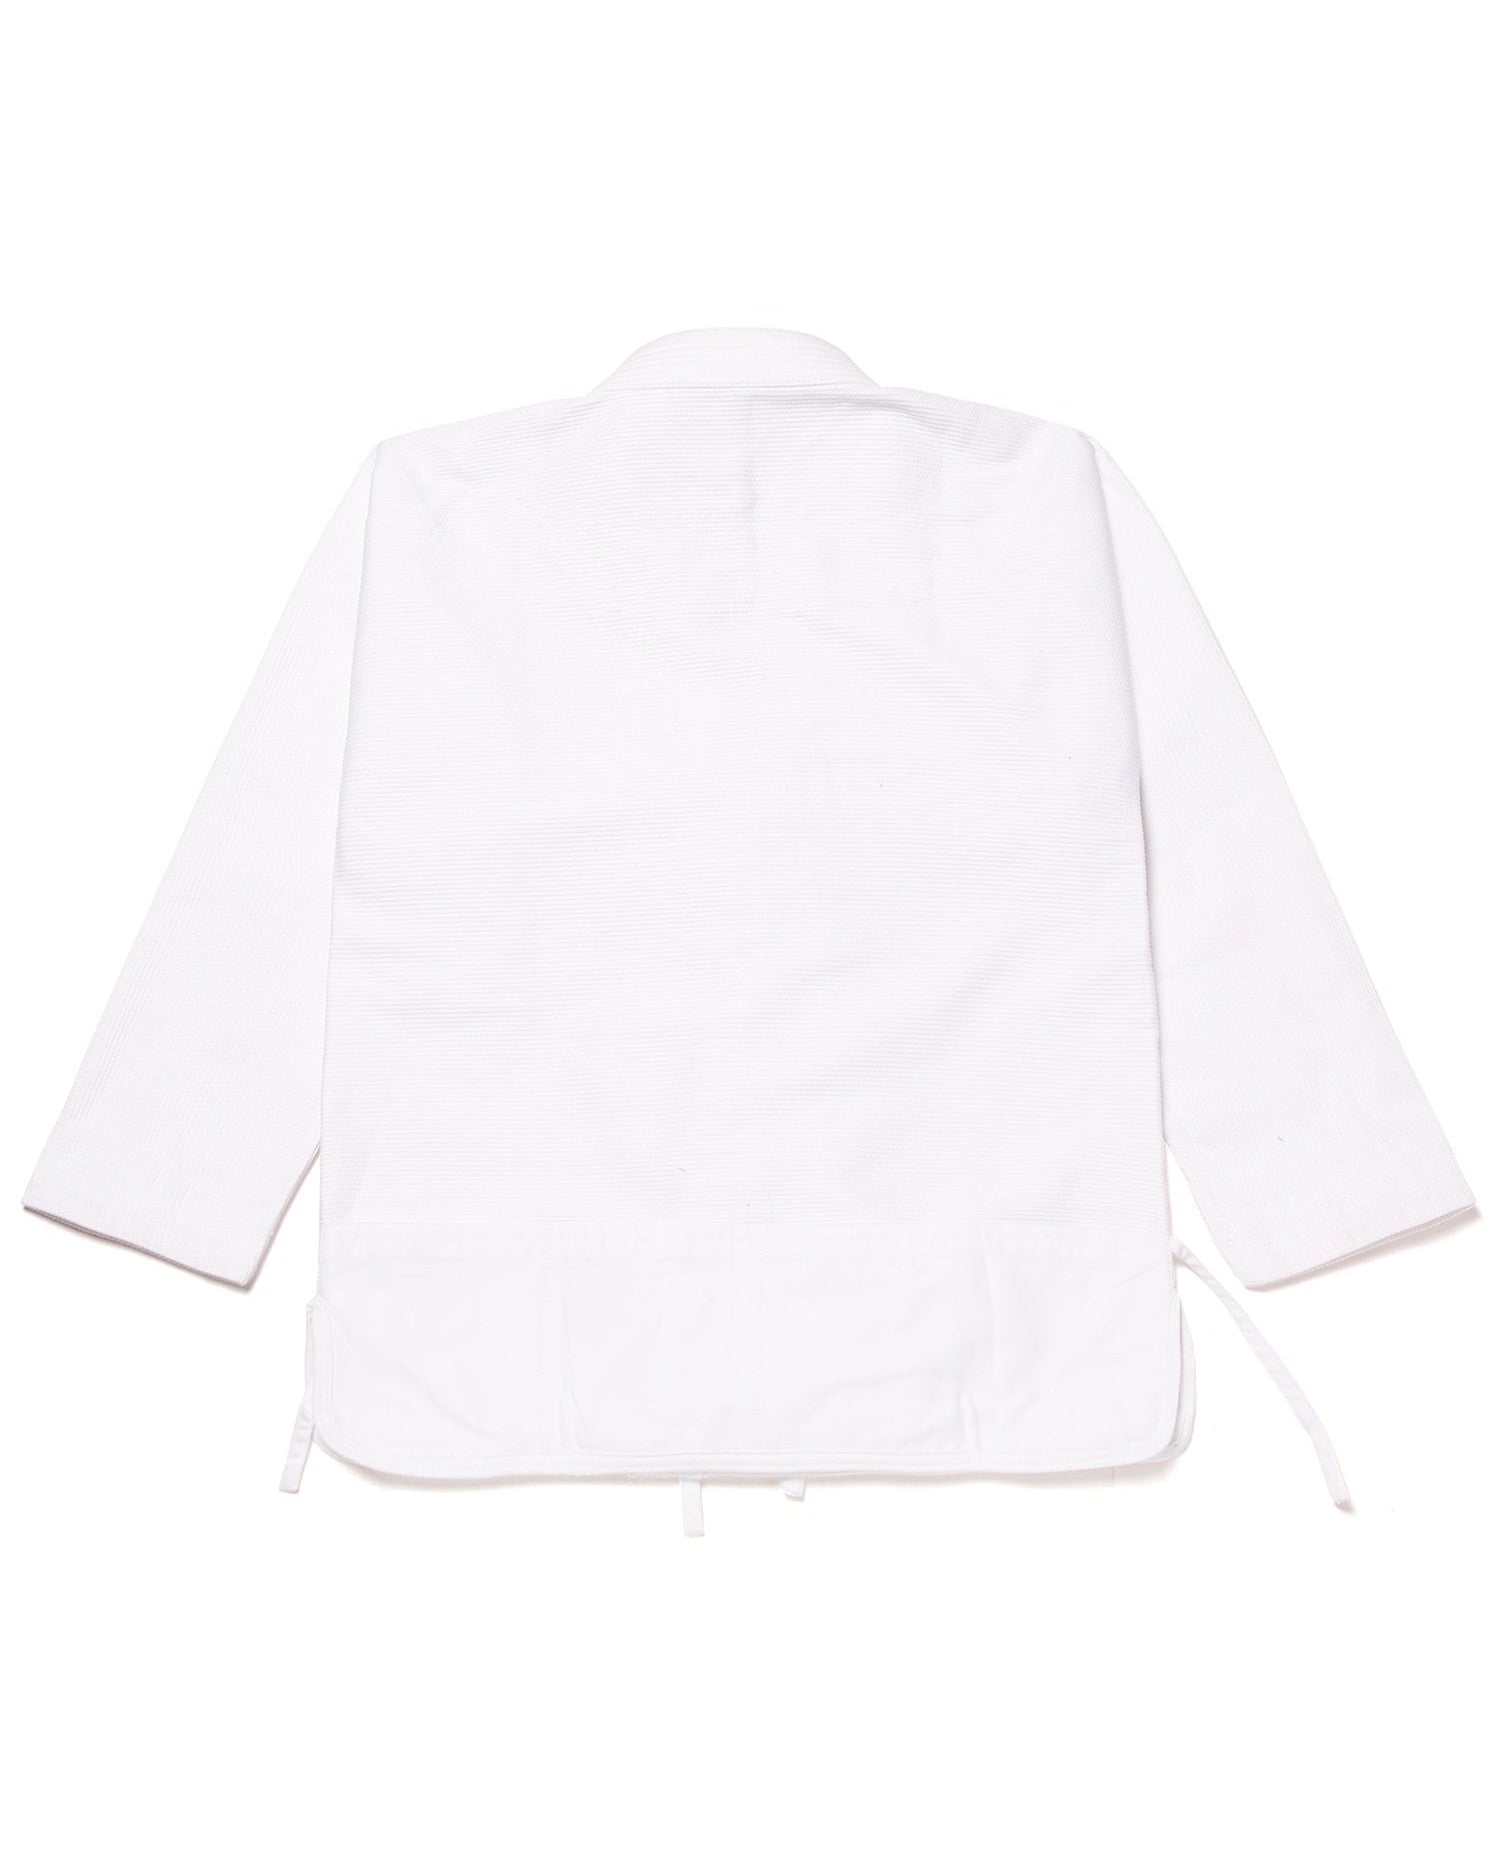 Garden Gi Jacket (White)